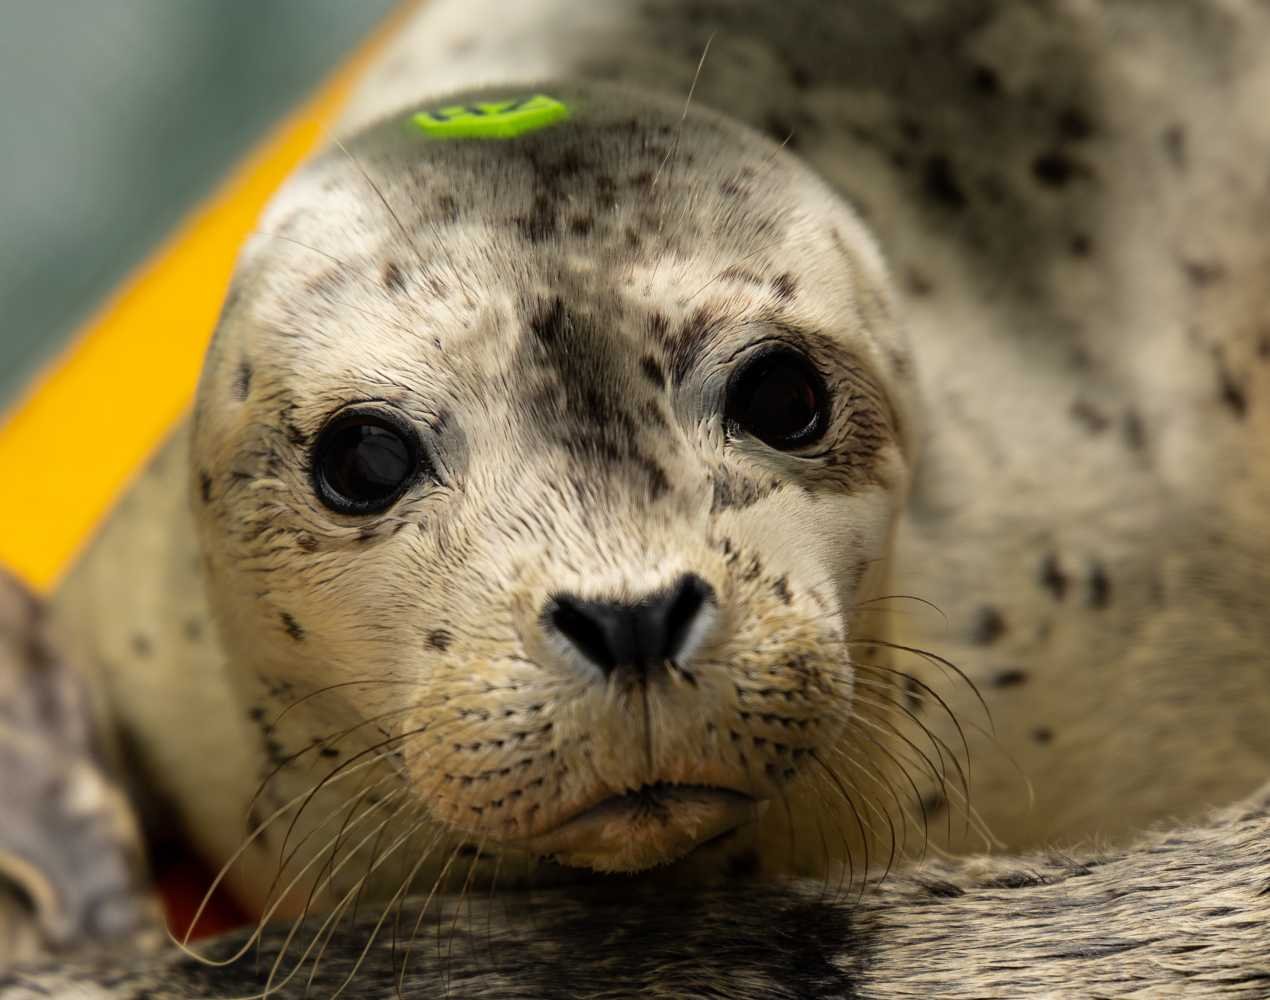 Mazel, harbor seal, photo © The Marine Mammal Center 